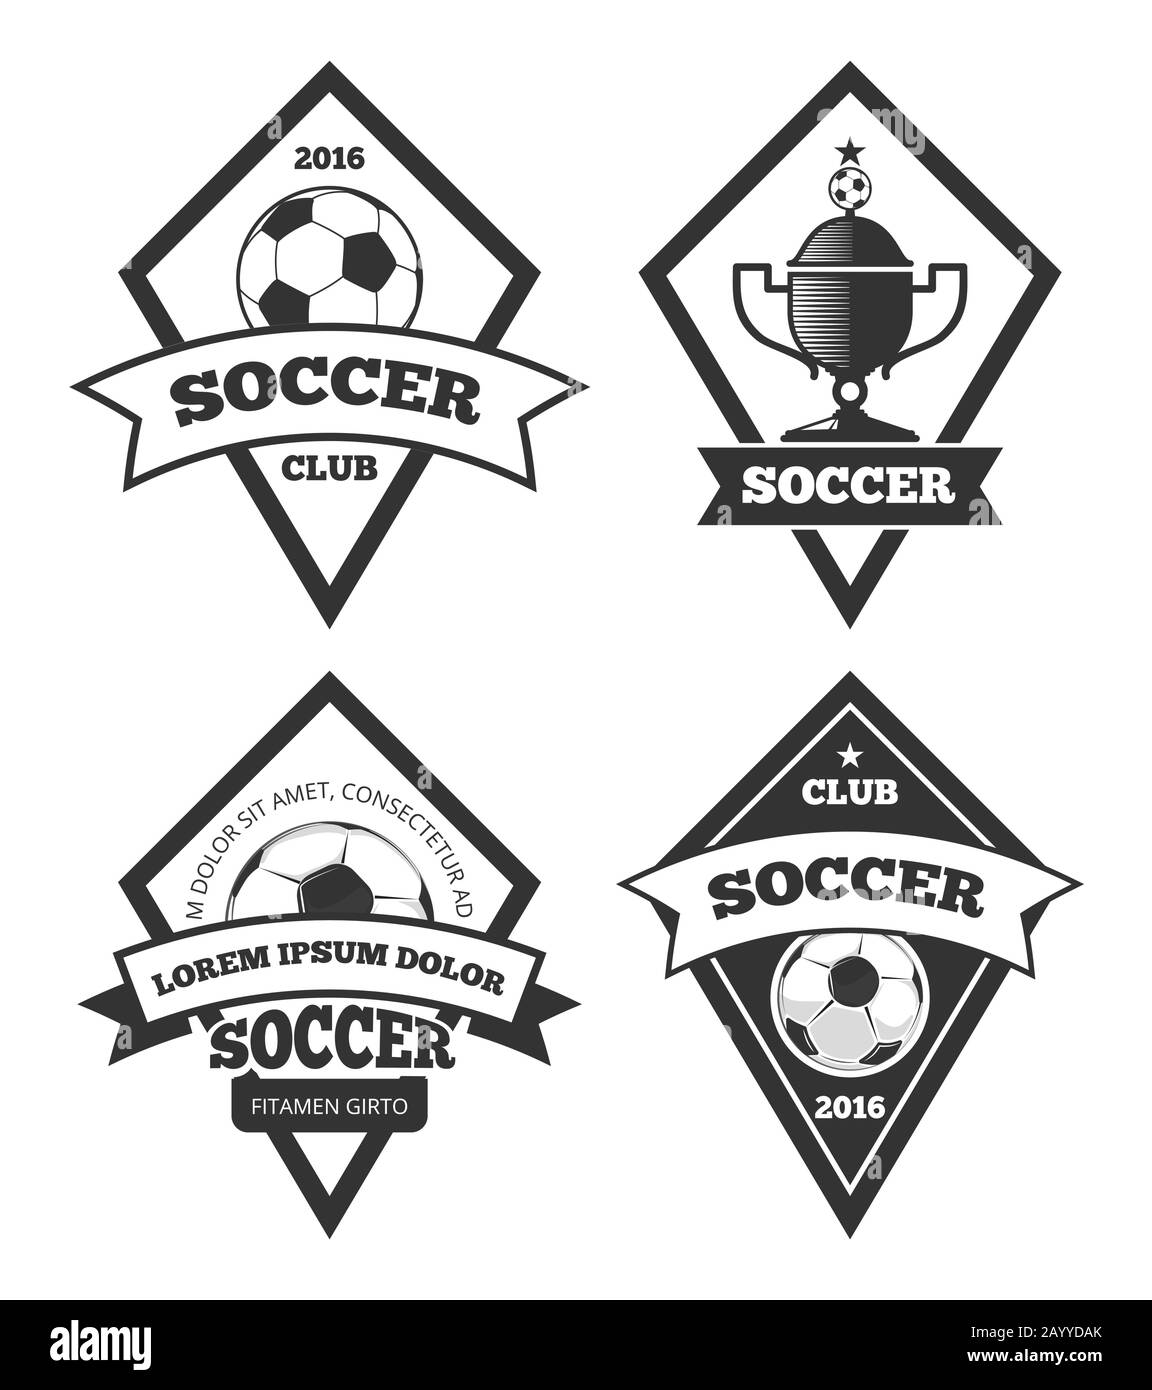 Fußball-Logo Schablonen Kollektion isoliert weiß. Fußball- oder Fußballmannschaftslabel, Vektorgrafiken Stock Vektor